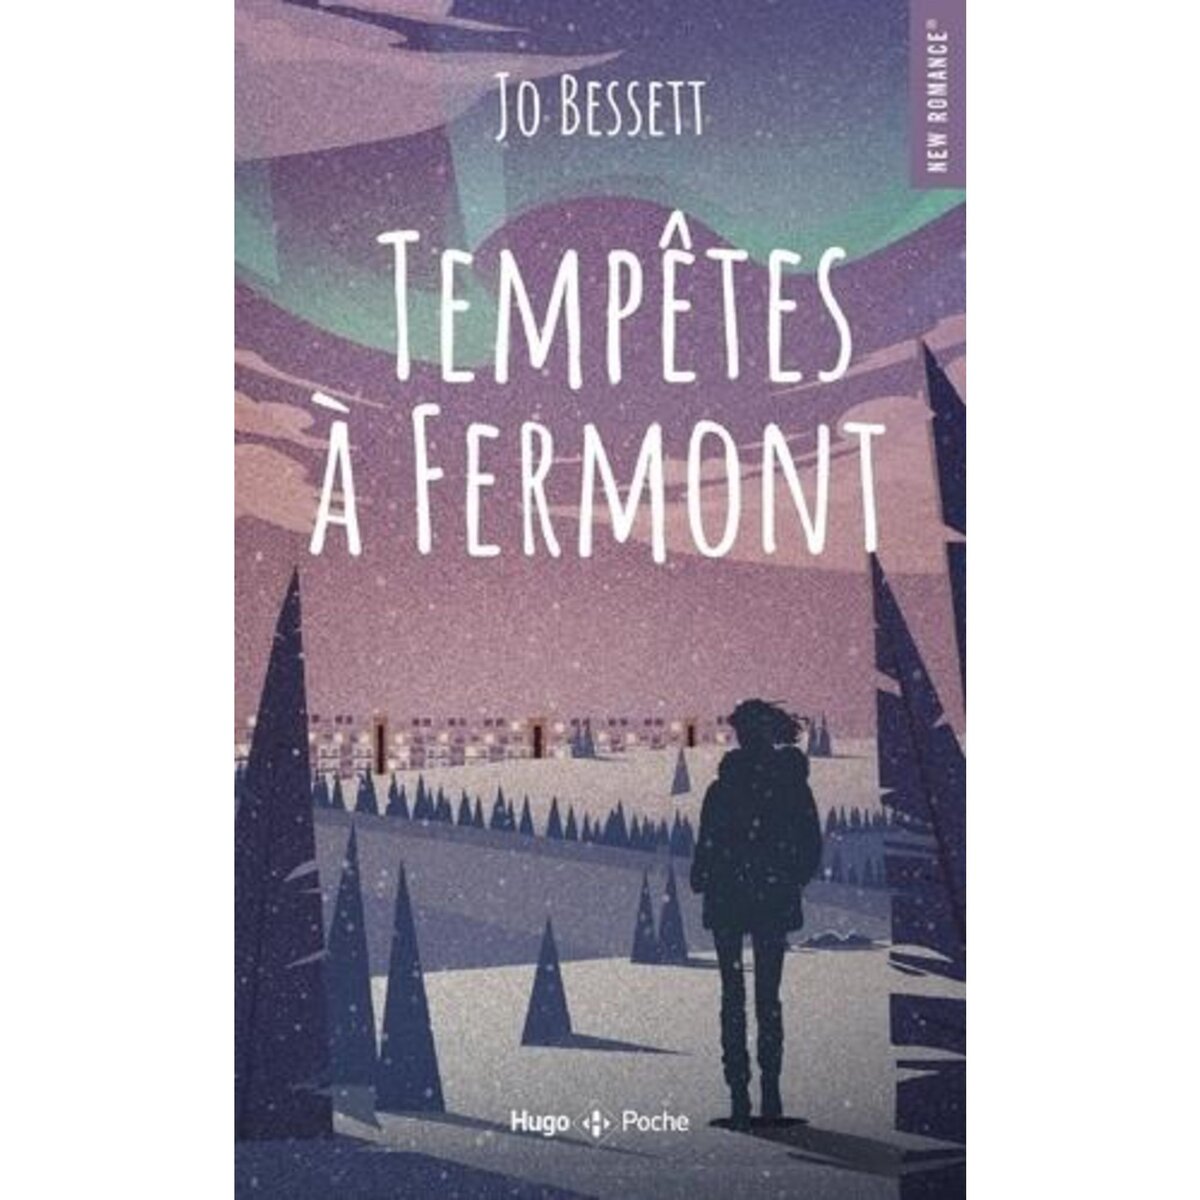  TEMPETES A FERMONT, Bessett Jo